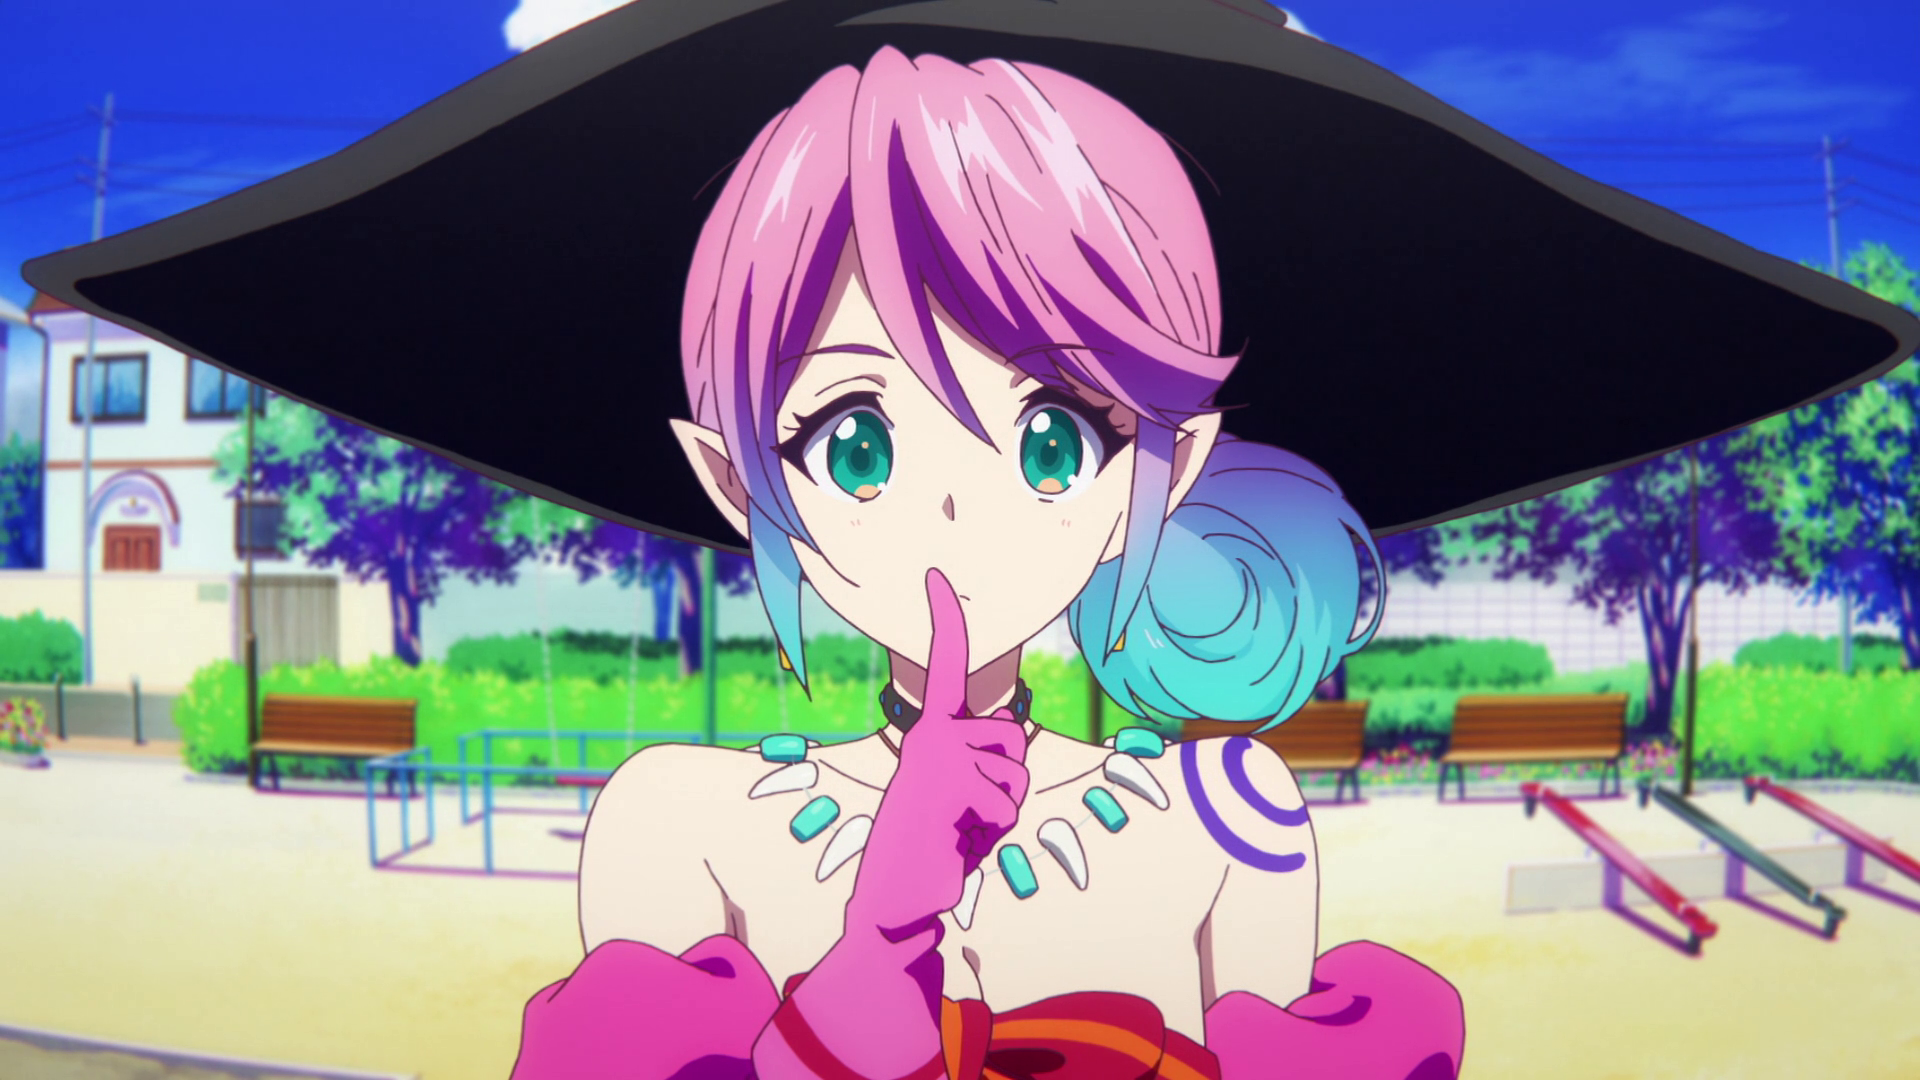 Anime Trending - Anime: Musaigen no Phantom World Trust me when I